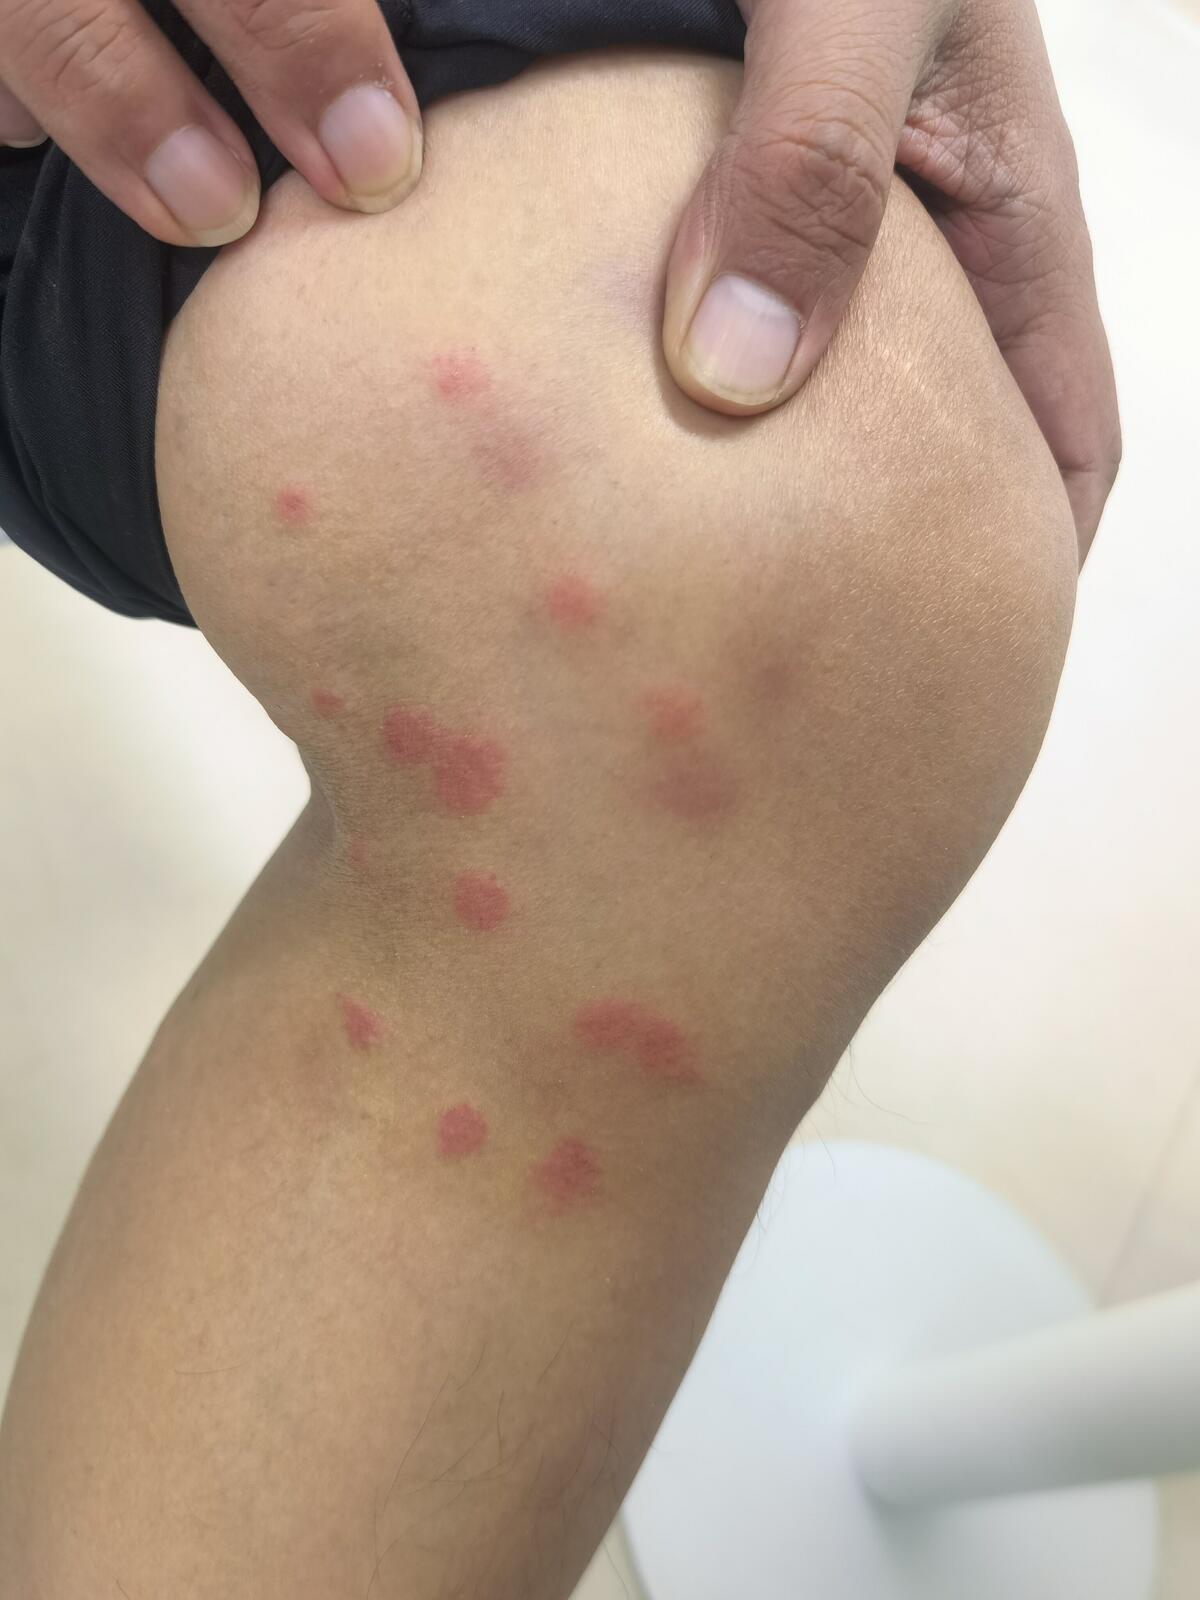 引起瘙痒不适主要是蚊虫注入皮肤的体液等过敏所致;一,虫咬皮炎是什么